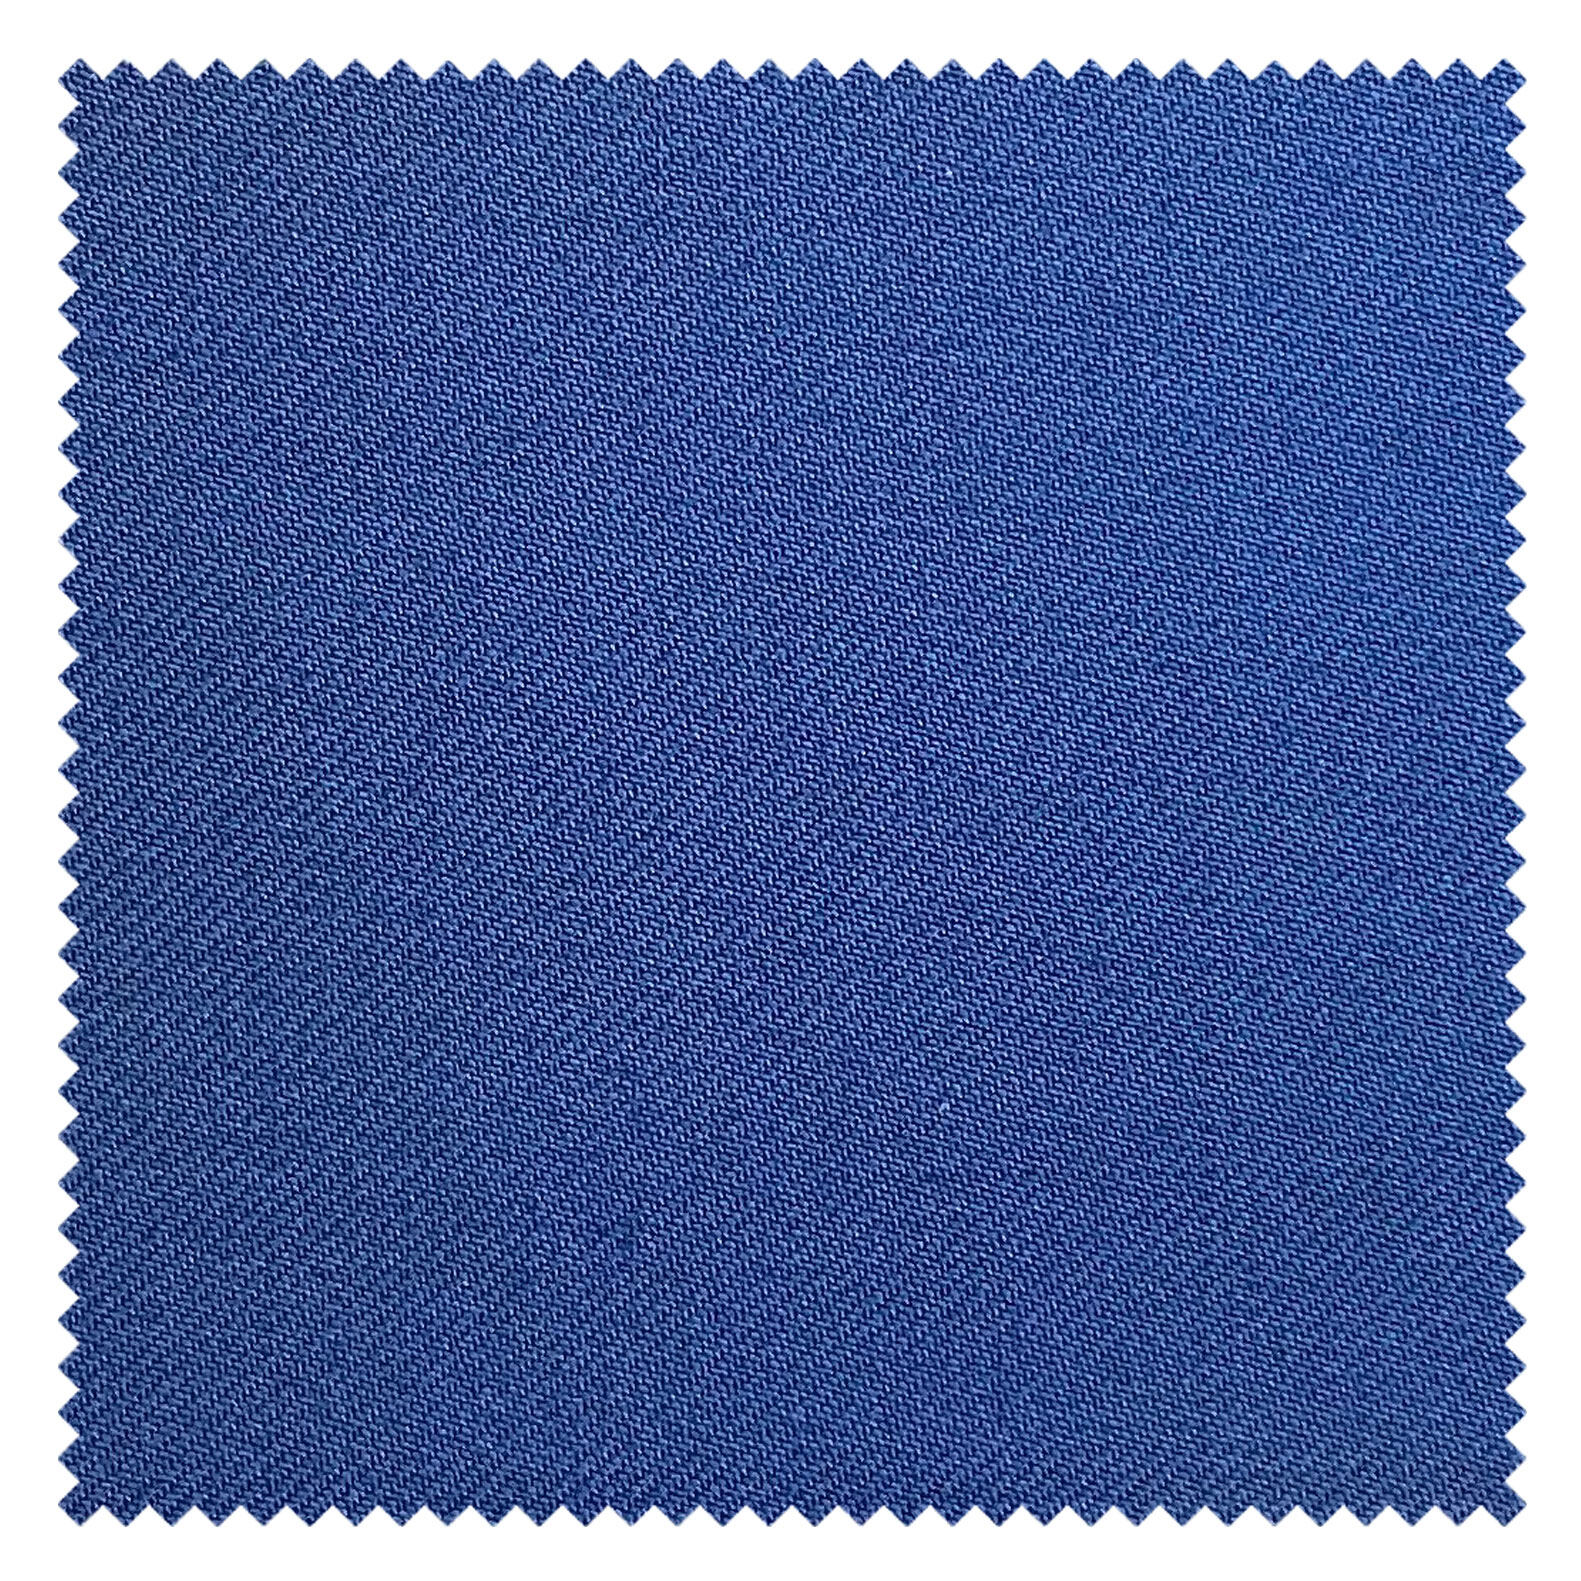 KINGMAN Cashmere Wool Fabric Royal Elegant OXFORD ผ้าตัดชุดสูท สีฟ้าอ๊อกซฟอร์ด กางเกง ผู้ชาย ผ้าตัดเสื้อ ยูนิฟอร์ม ผ้าวูล ผ้าคุณภาพดี กว้าง 60 นิ้ว ยาว 1 เมตร